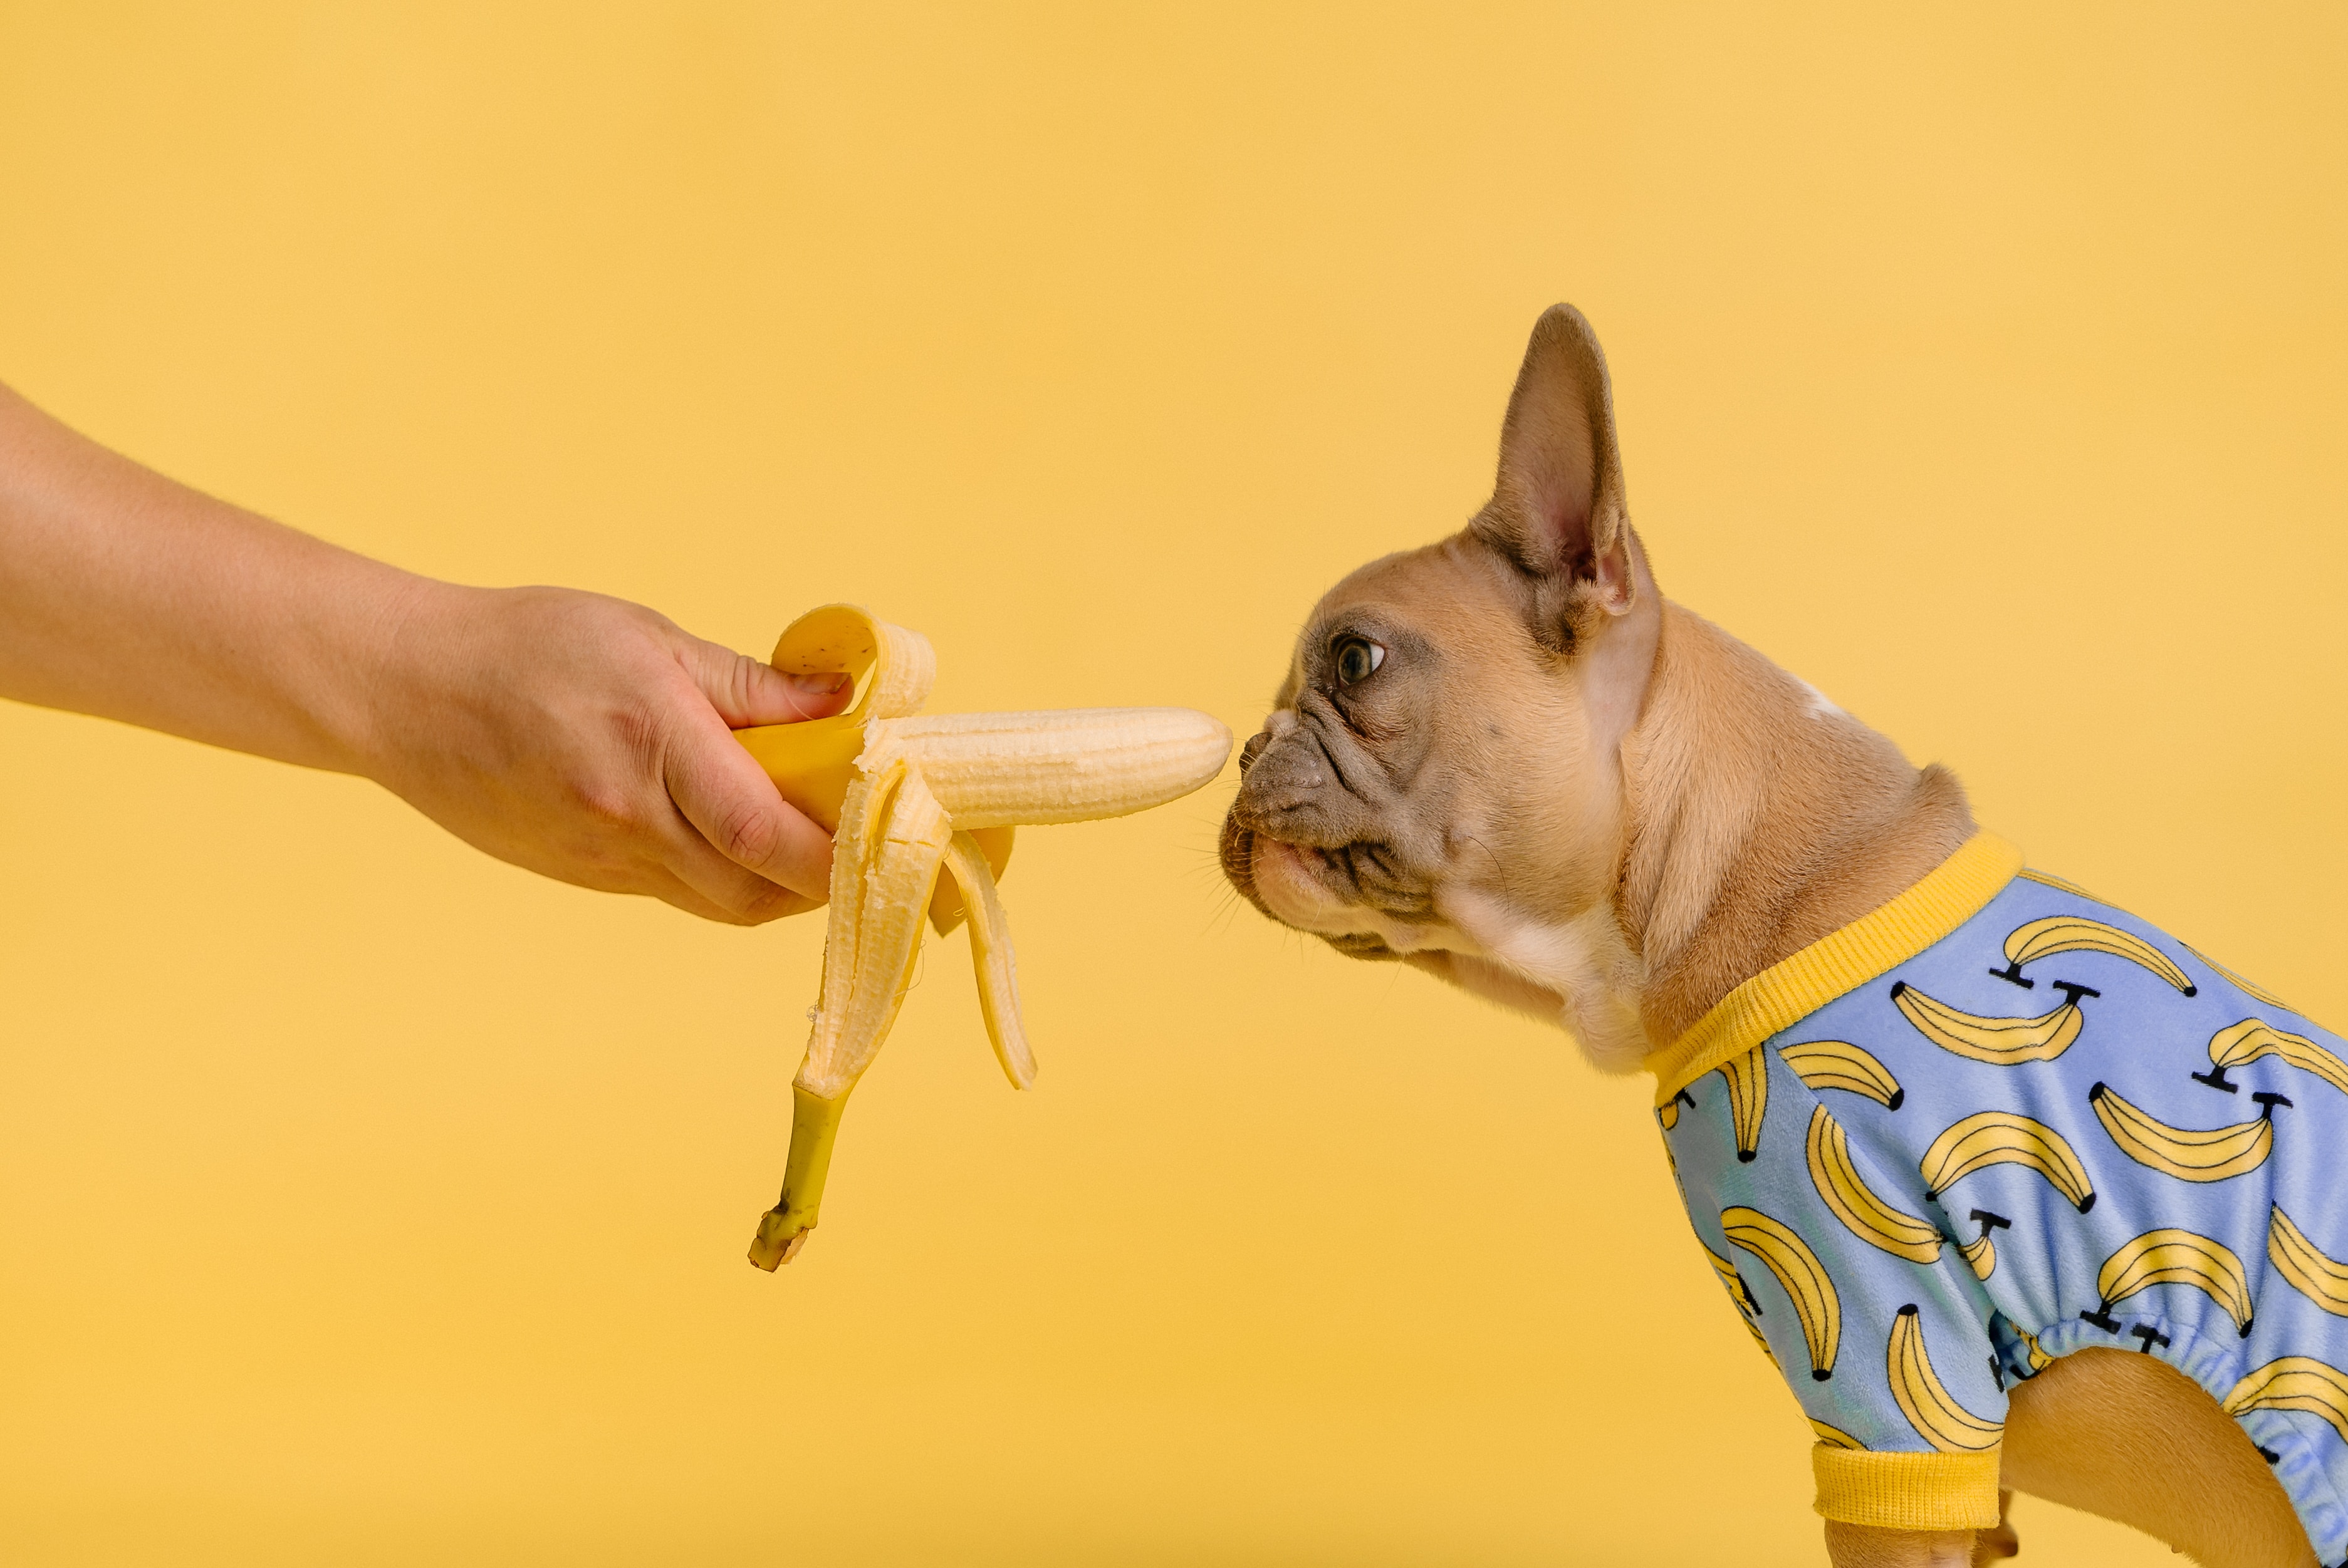 Is een banaan eten voor het slapen beter voor je nachtrust?